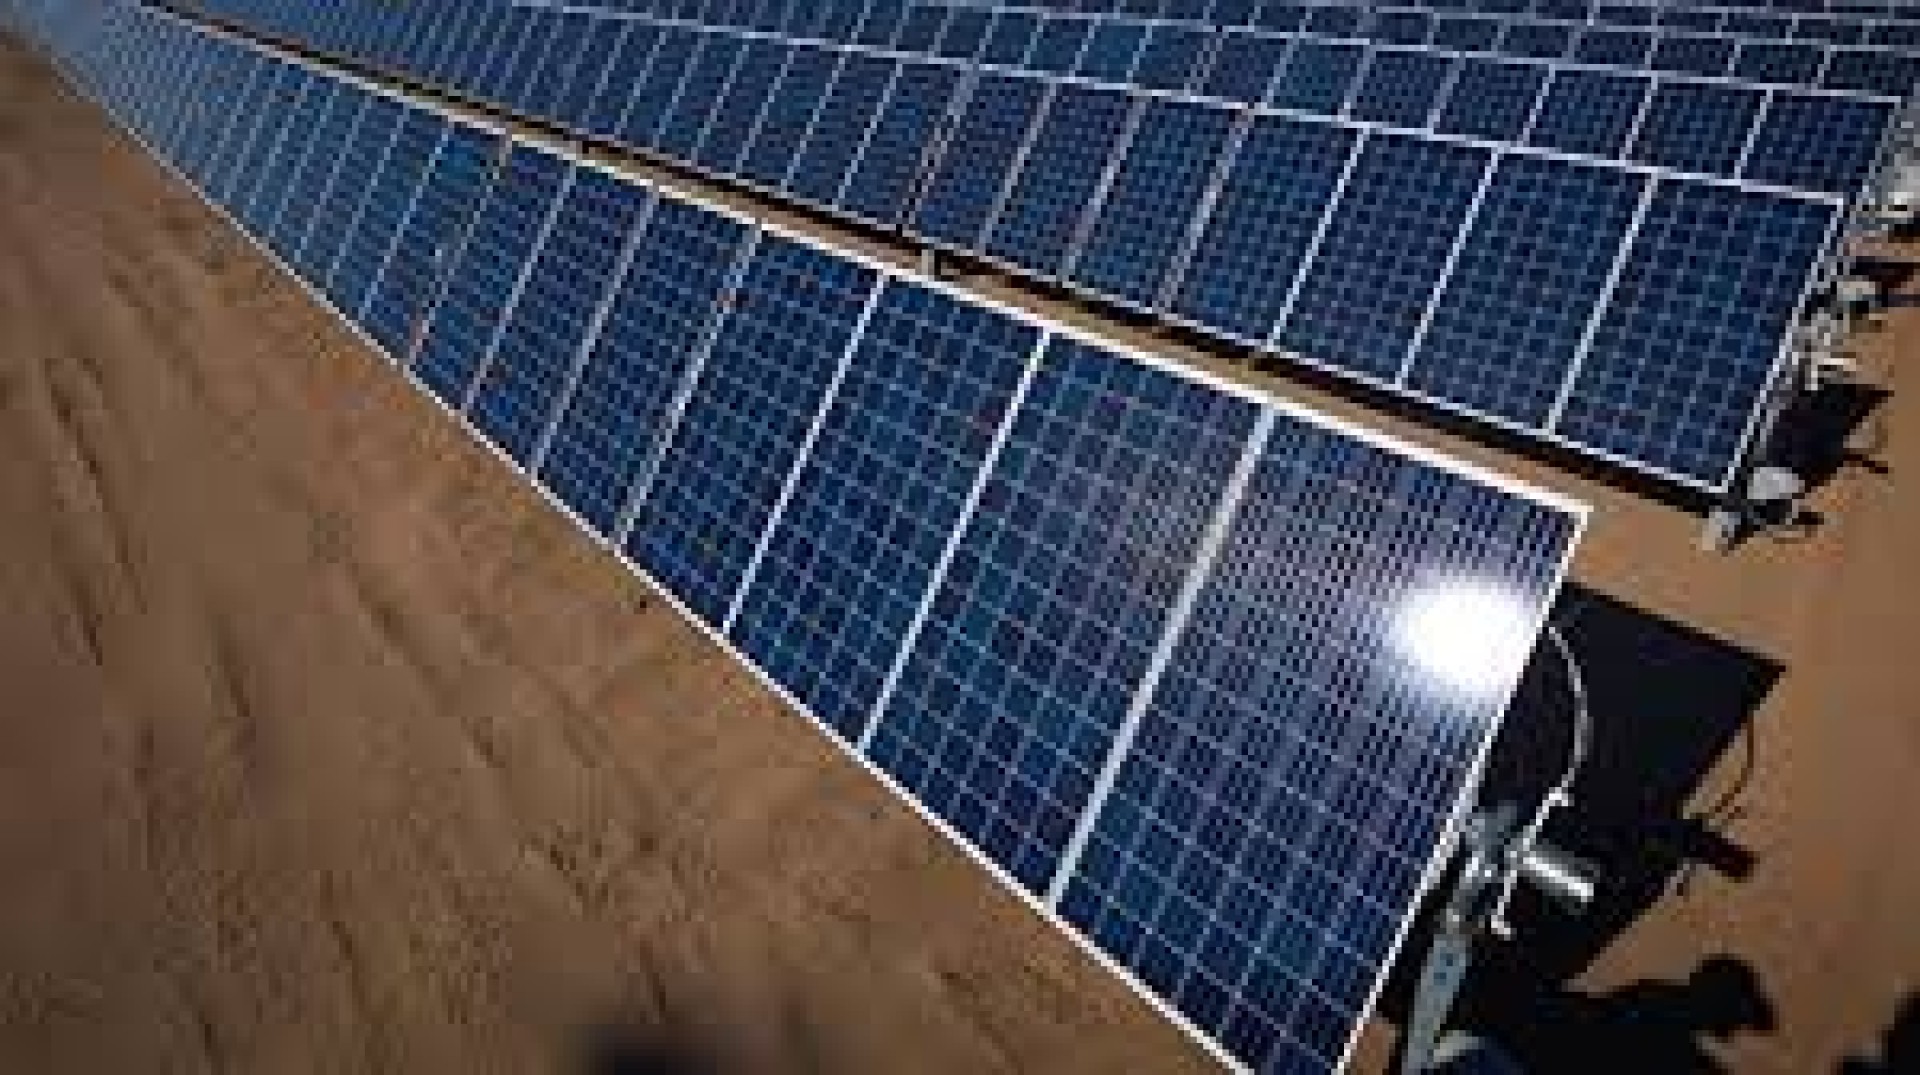 ألواح شمسية شركة TRINA SOLAR